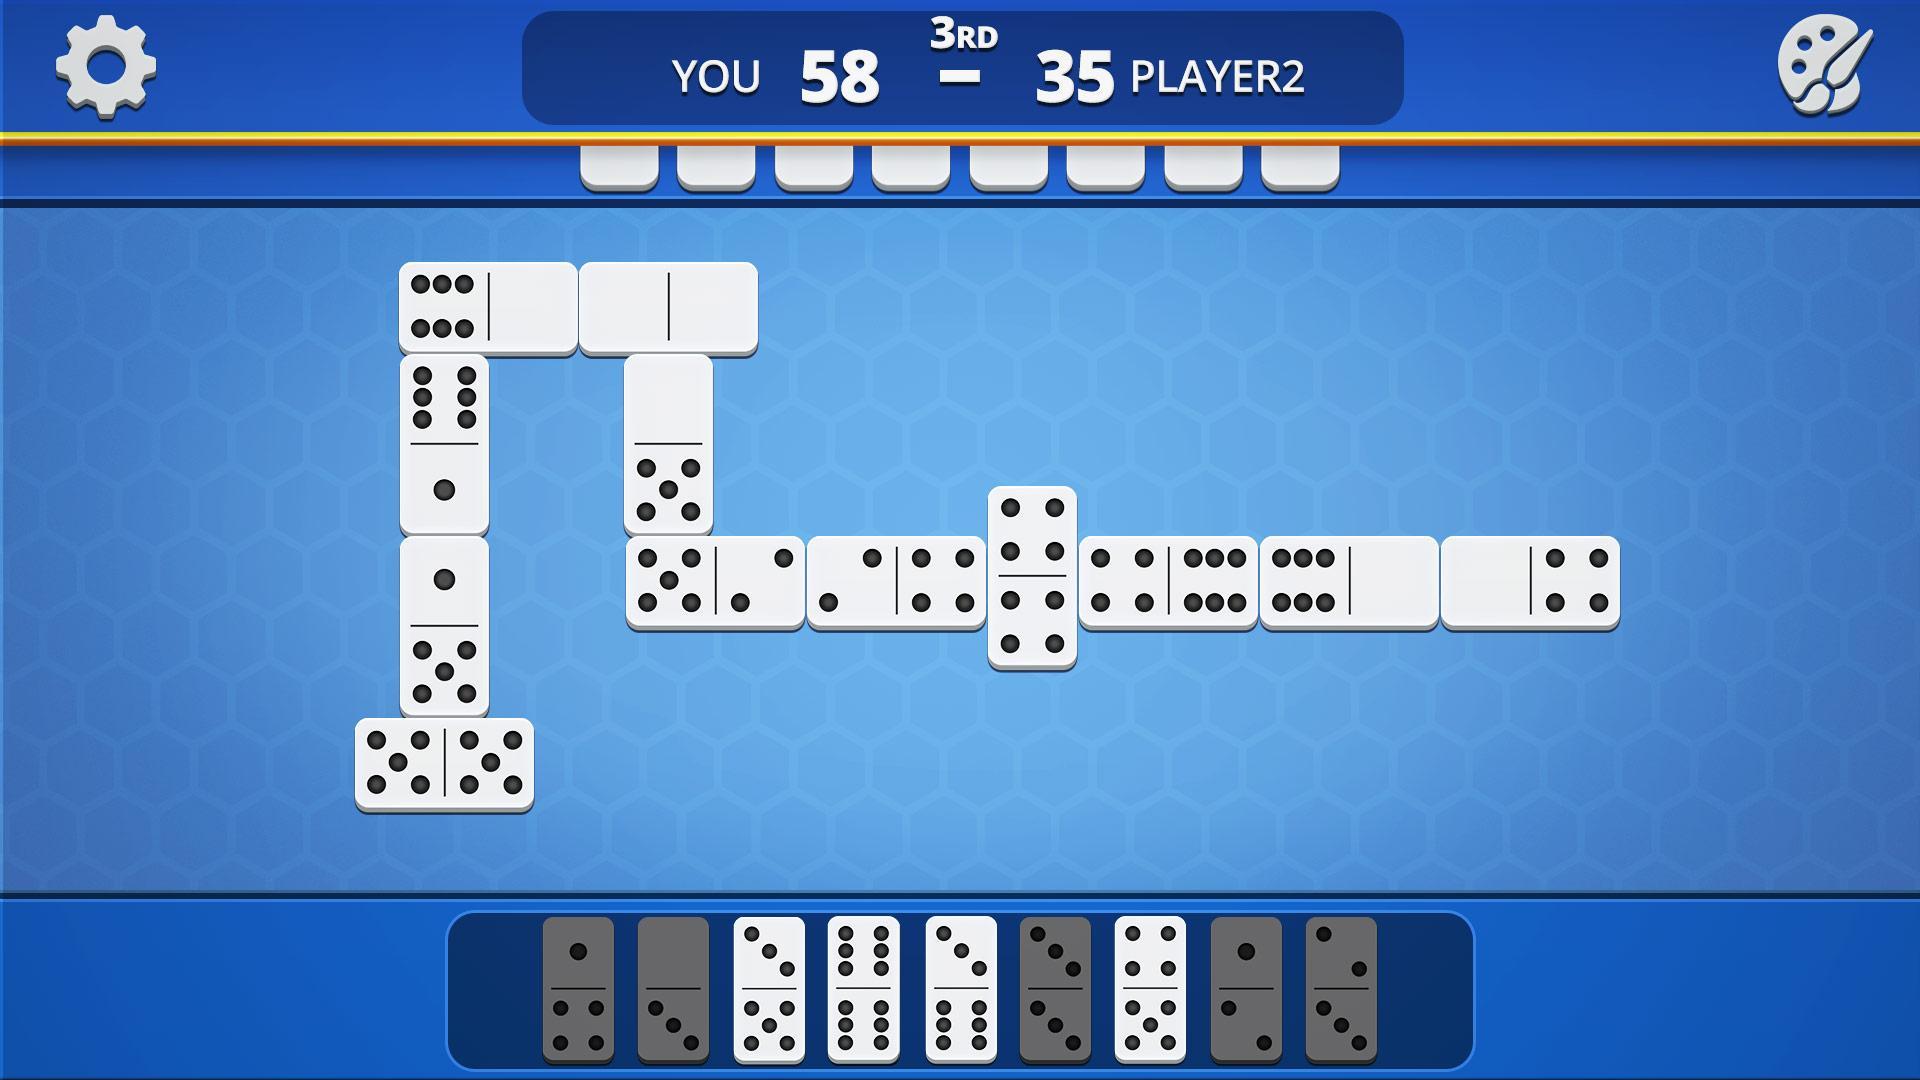 Dominoes Classic Domino Tile Based Game 1.2.5 Screenshot 24